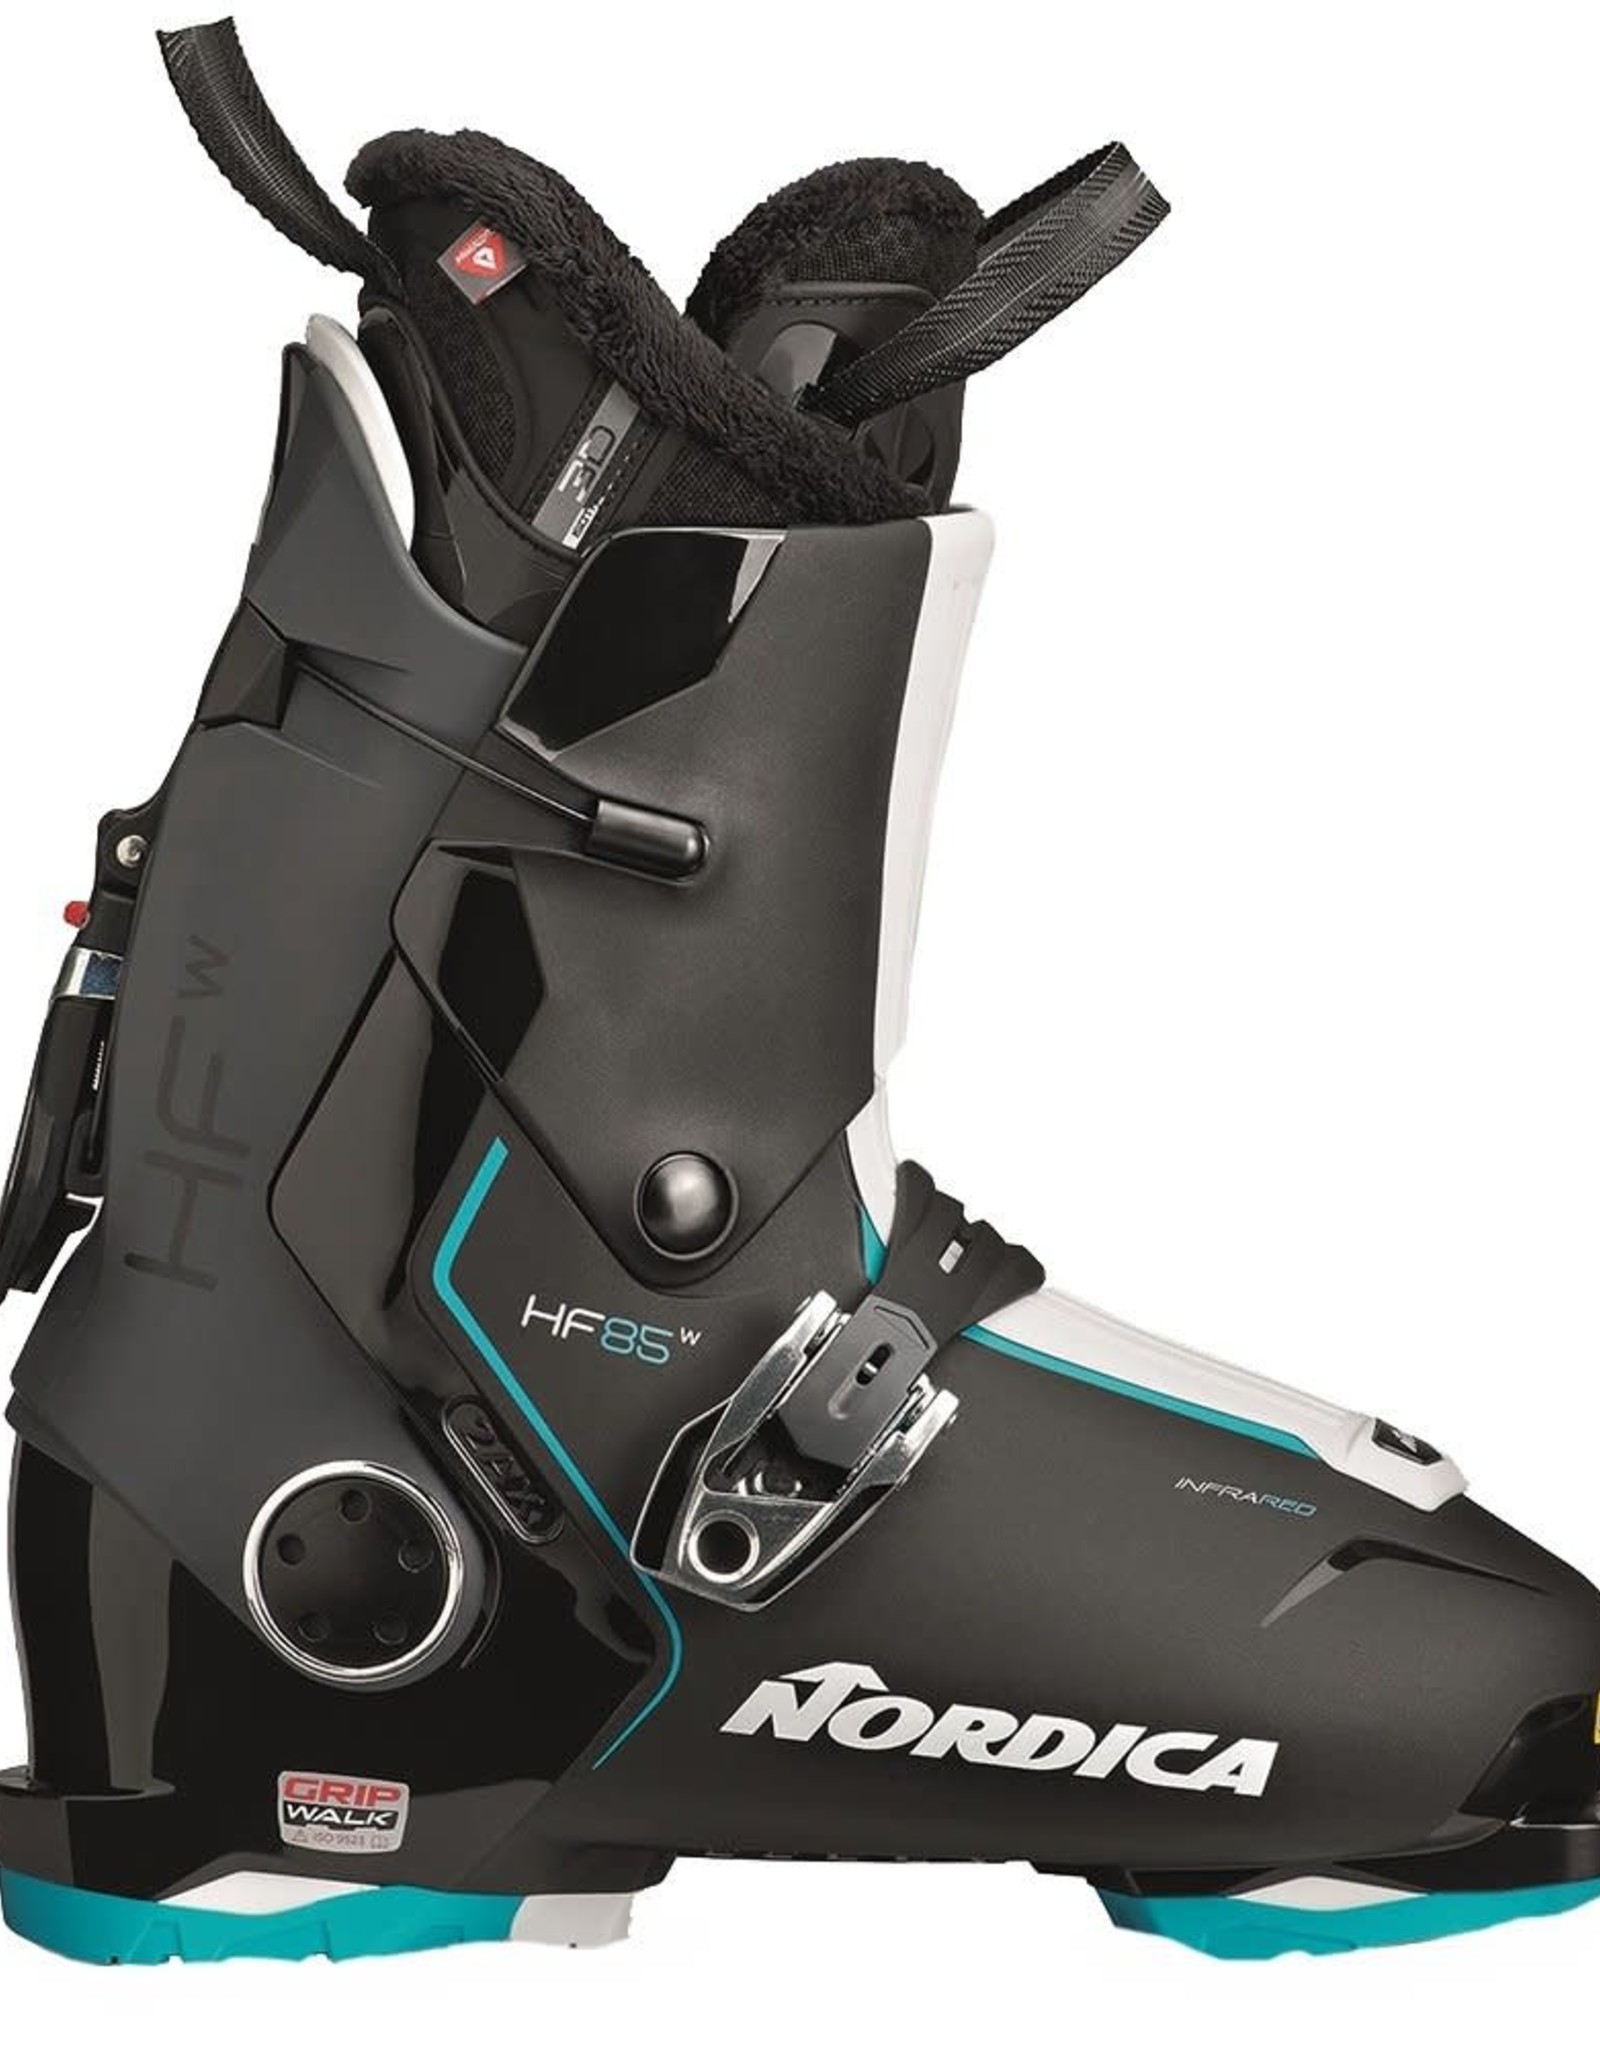 NORDICA NORDICA Ski Boots HF 85 W (GW) (21/22)